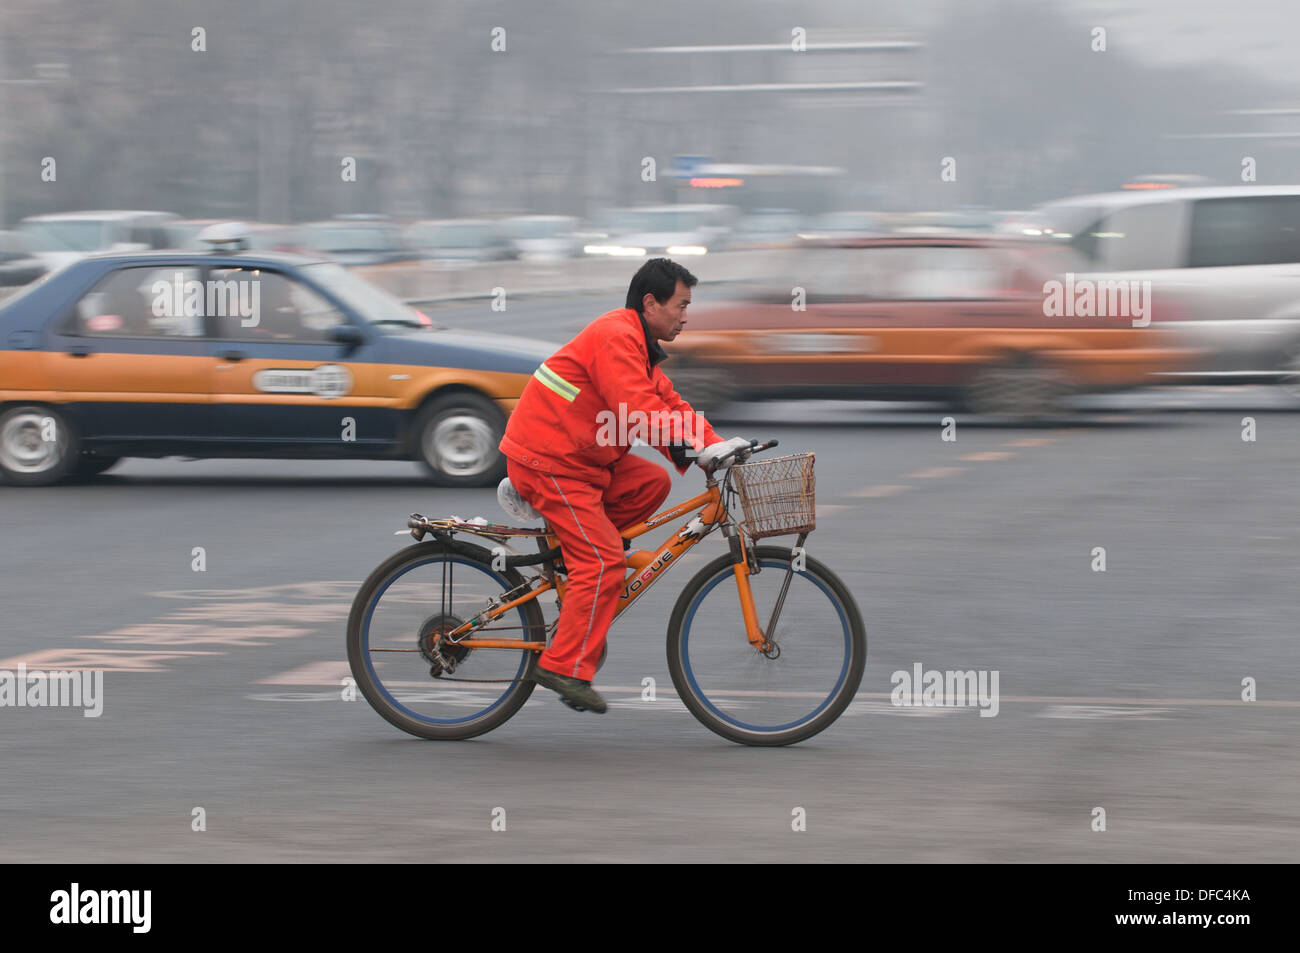 Chinese worker on bike in Beijing, China Stock Photo